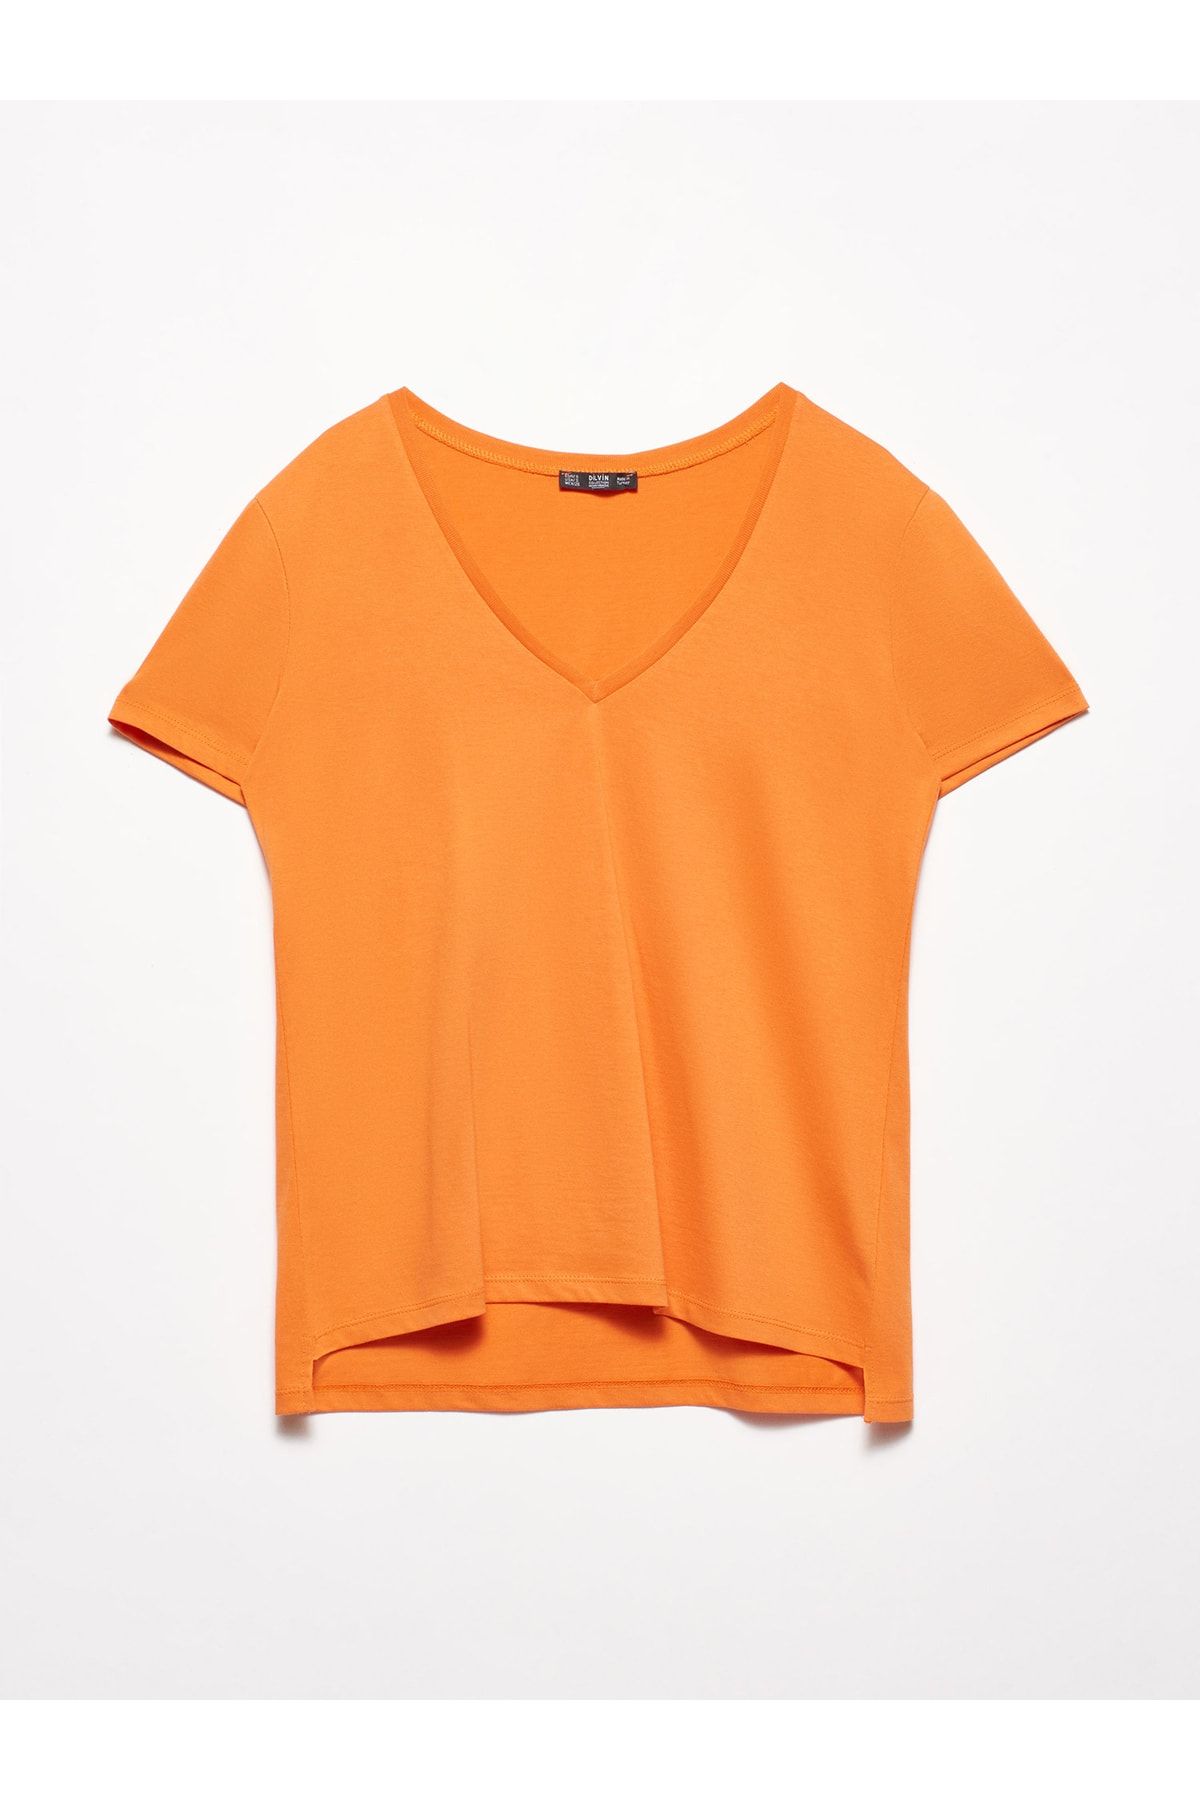 تی شرت یقه v آستین کوتاه زنانه دلوین Dilvin (برند ترکیه)